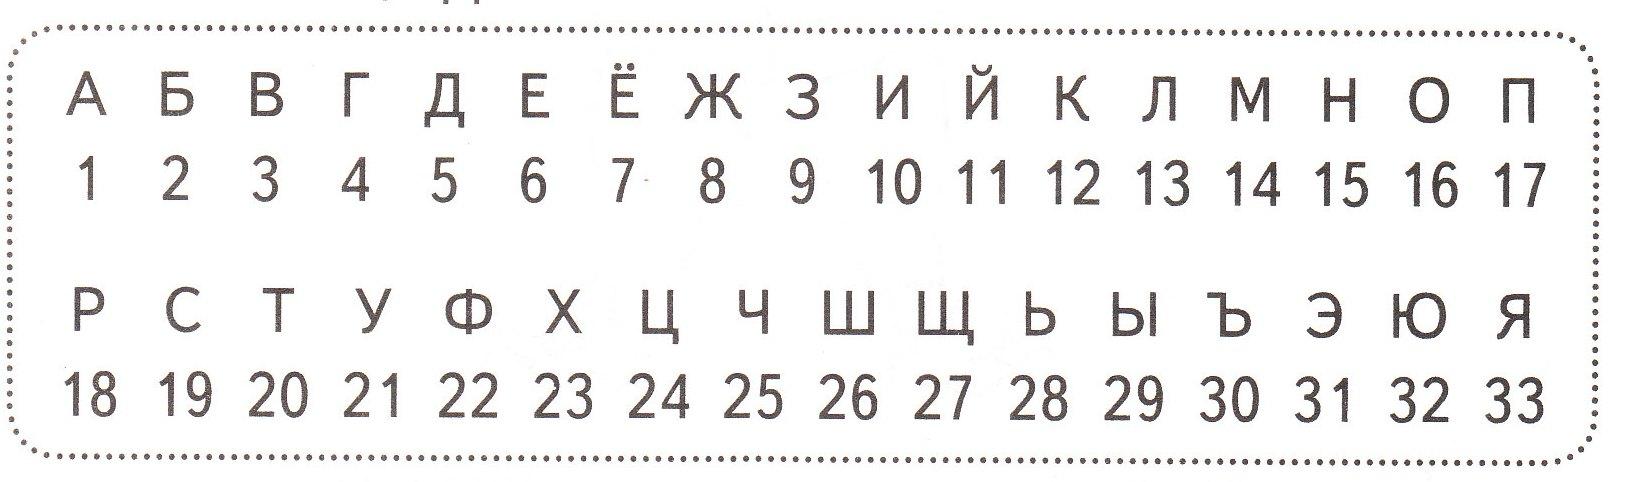 Буквы в номере счета. Русский алфавит с цифрами букв. Алфавит с пронумерованными буквами русский. Буквы русского алфавита по номерам. Алфавит по нумерации букв.